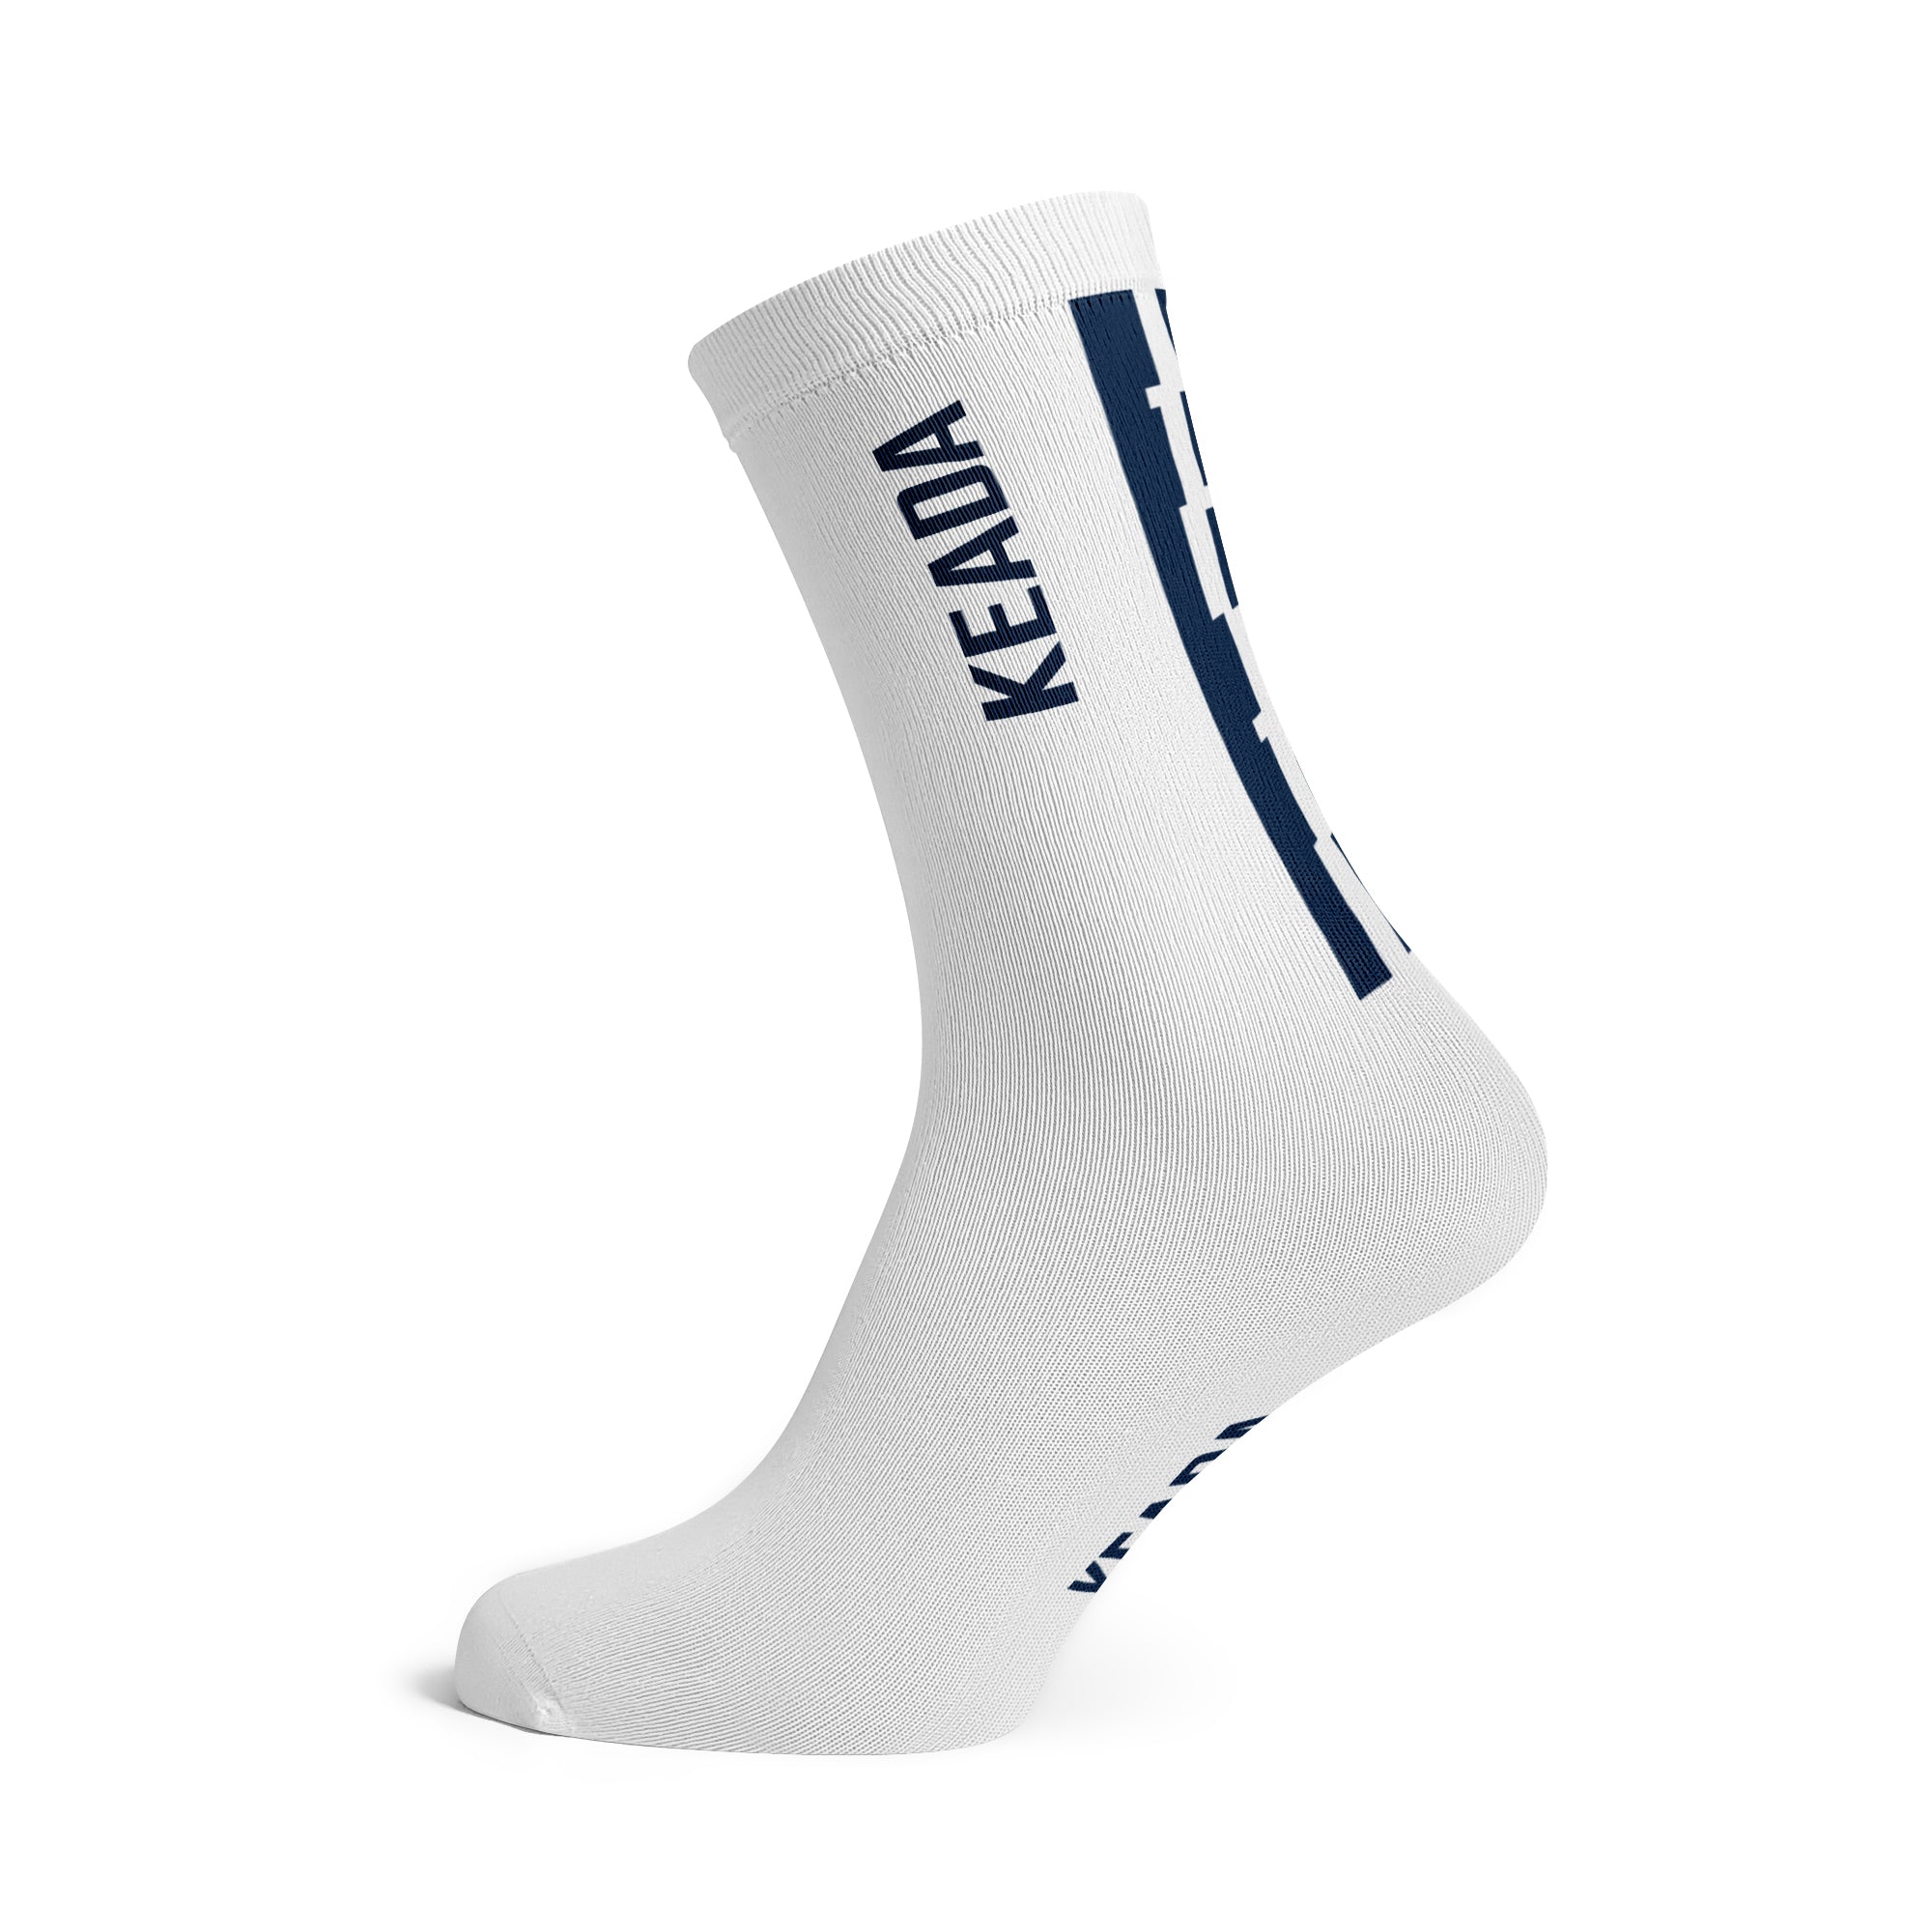 Essential Cycling Socks - White